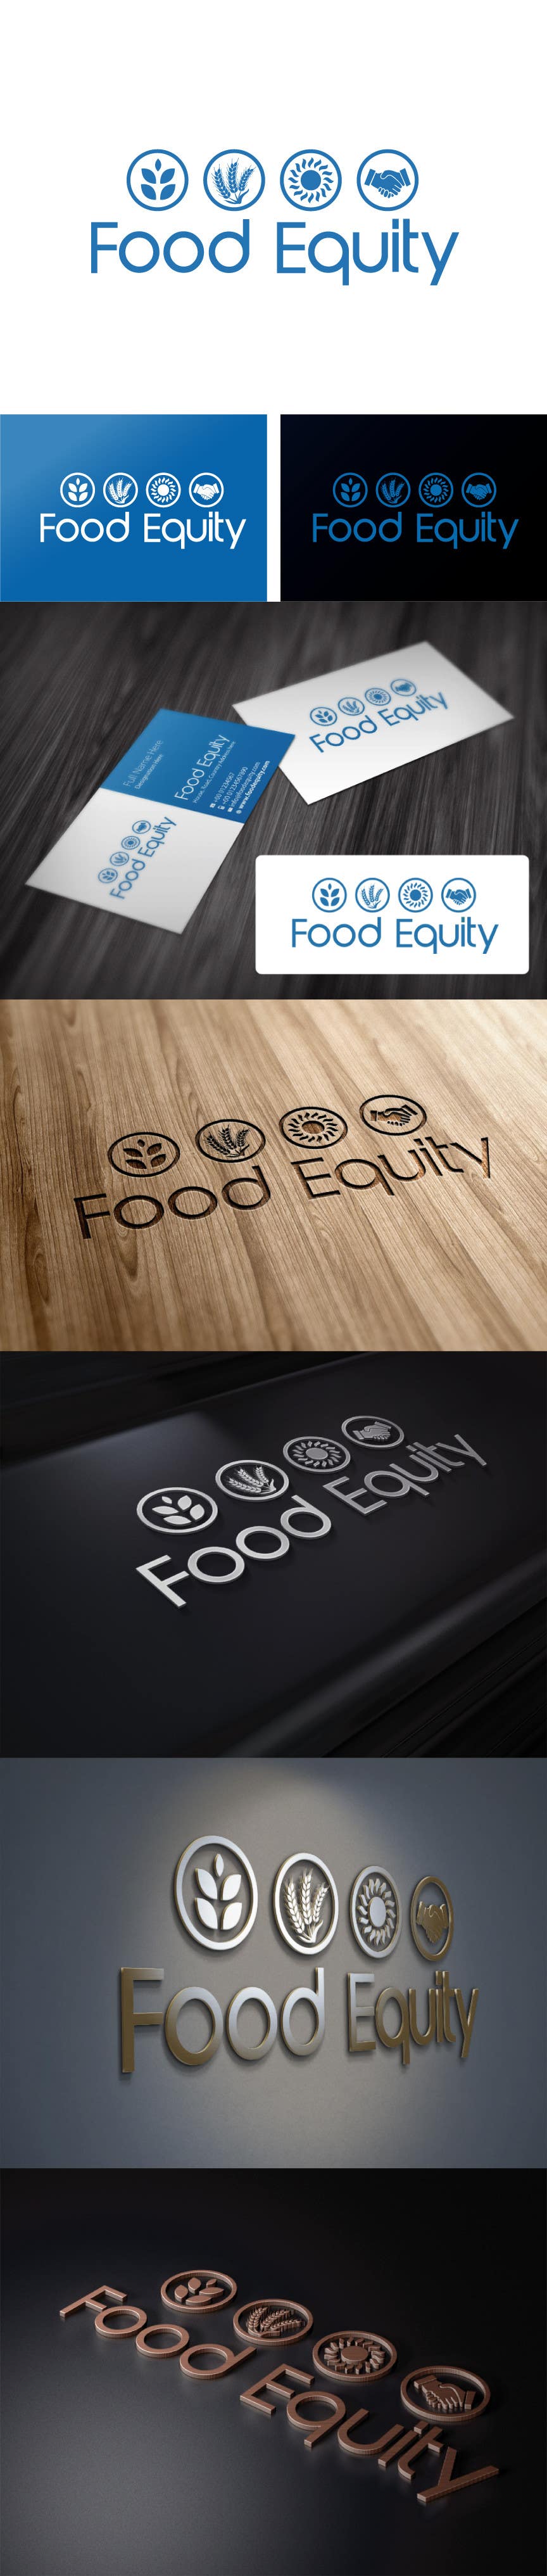 Bài tham dự cuộc thi #244 cho                                                 Design a Logo for "Food Equity"
                                            